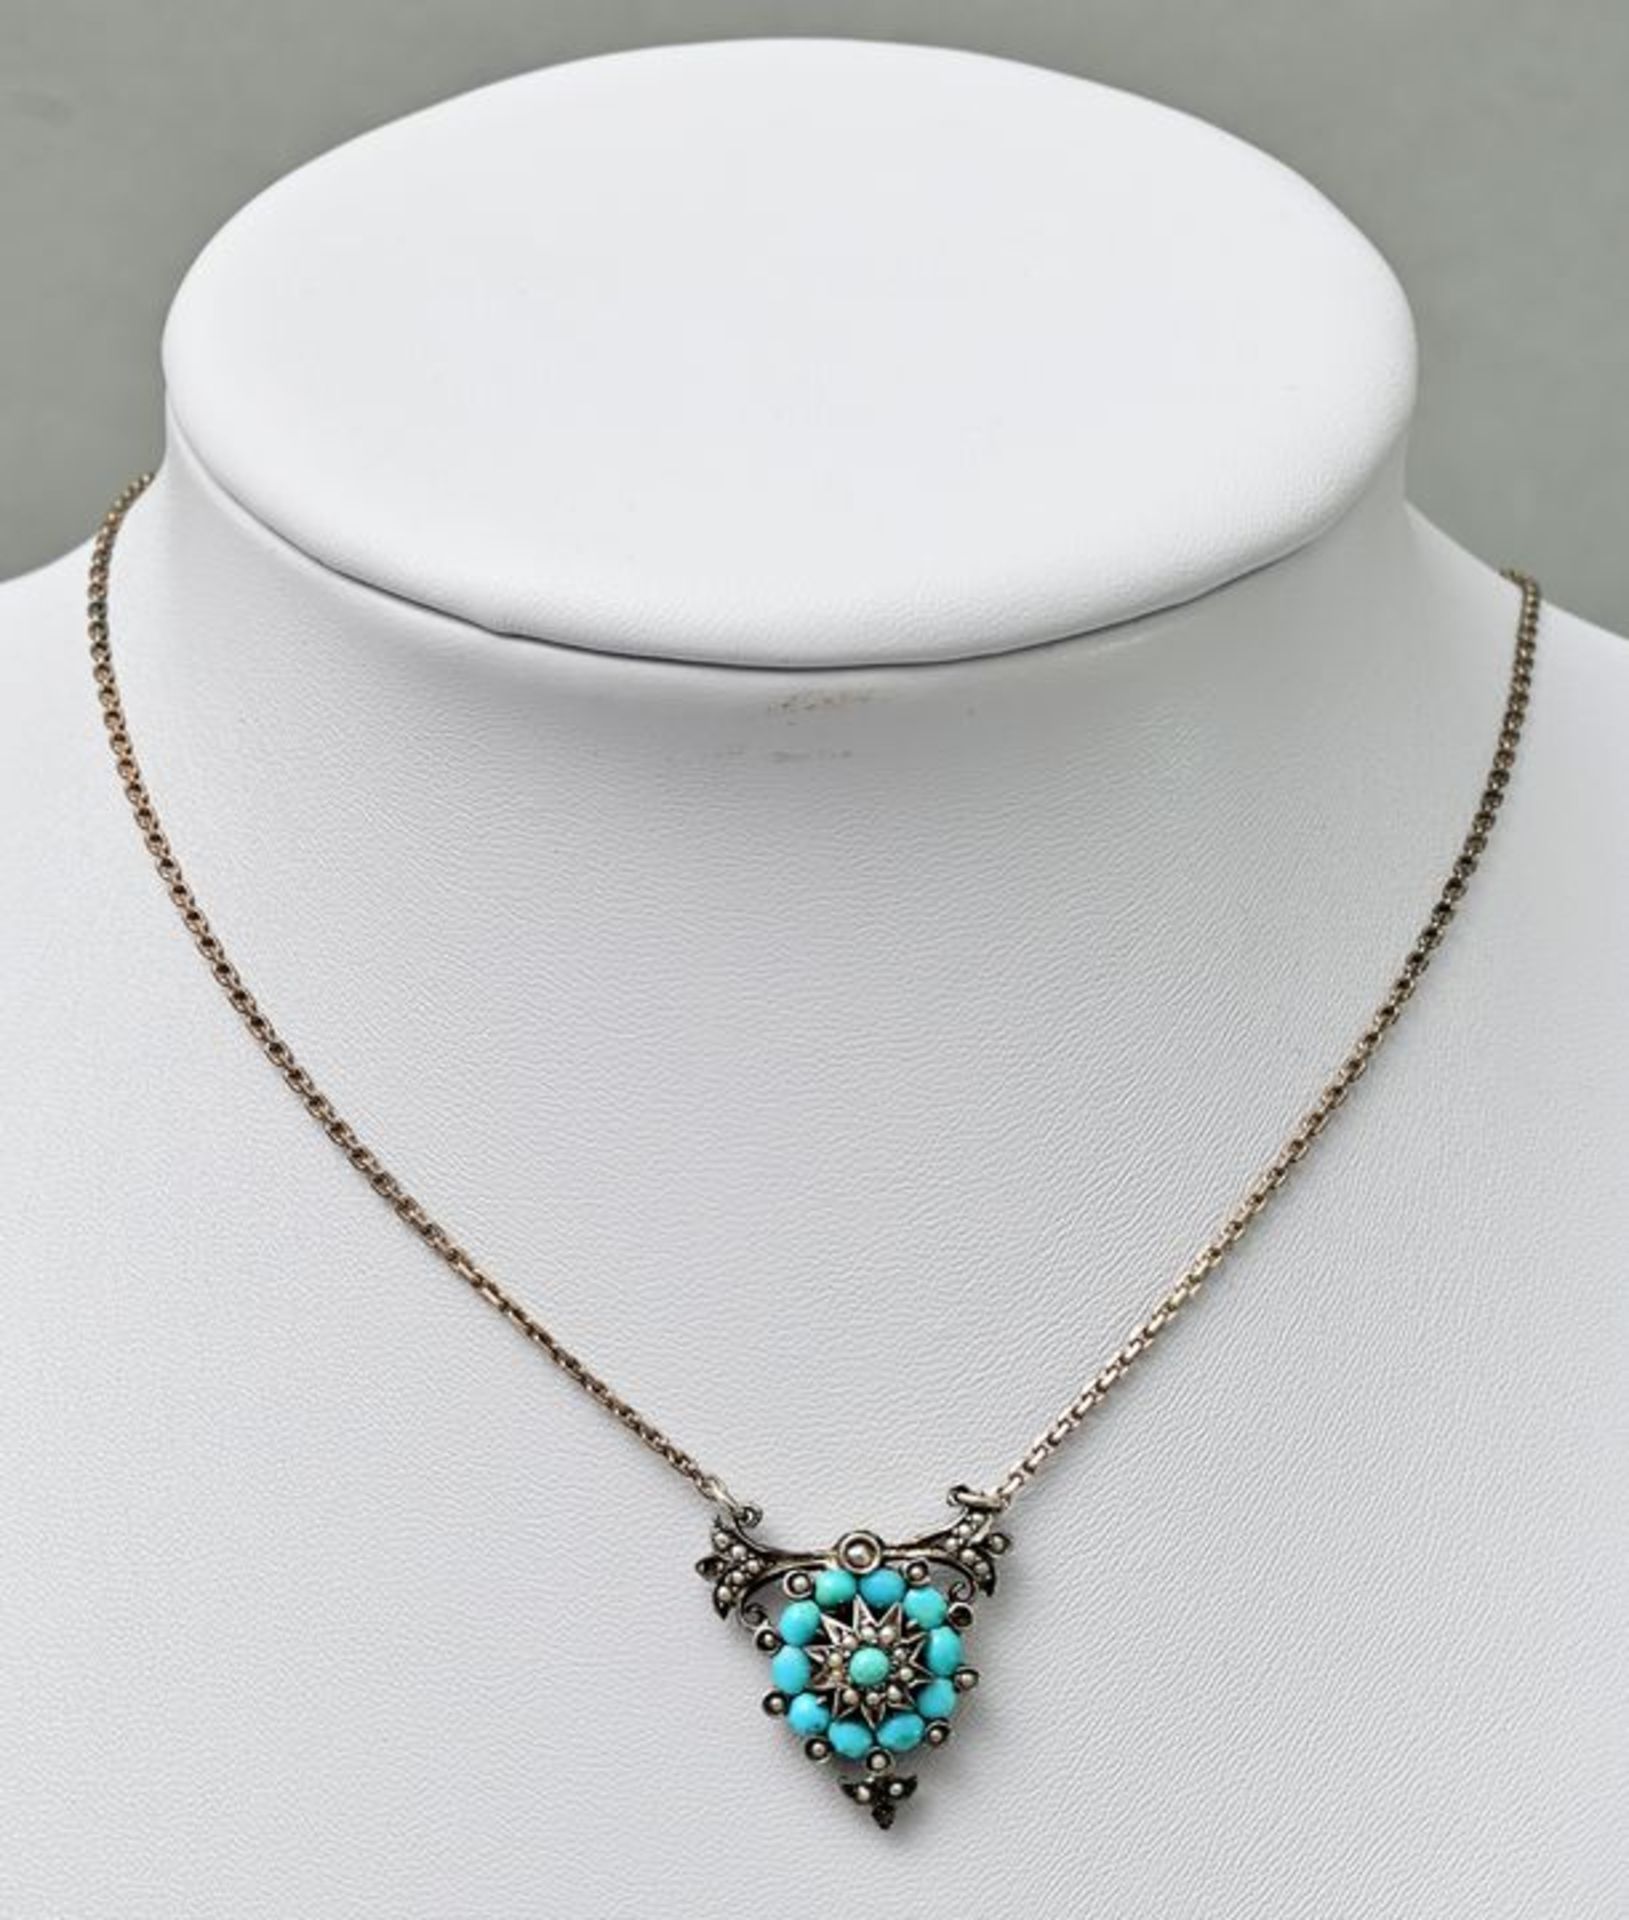 Biedermeier-Kette/ necklace with pendant